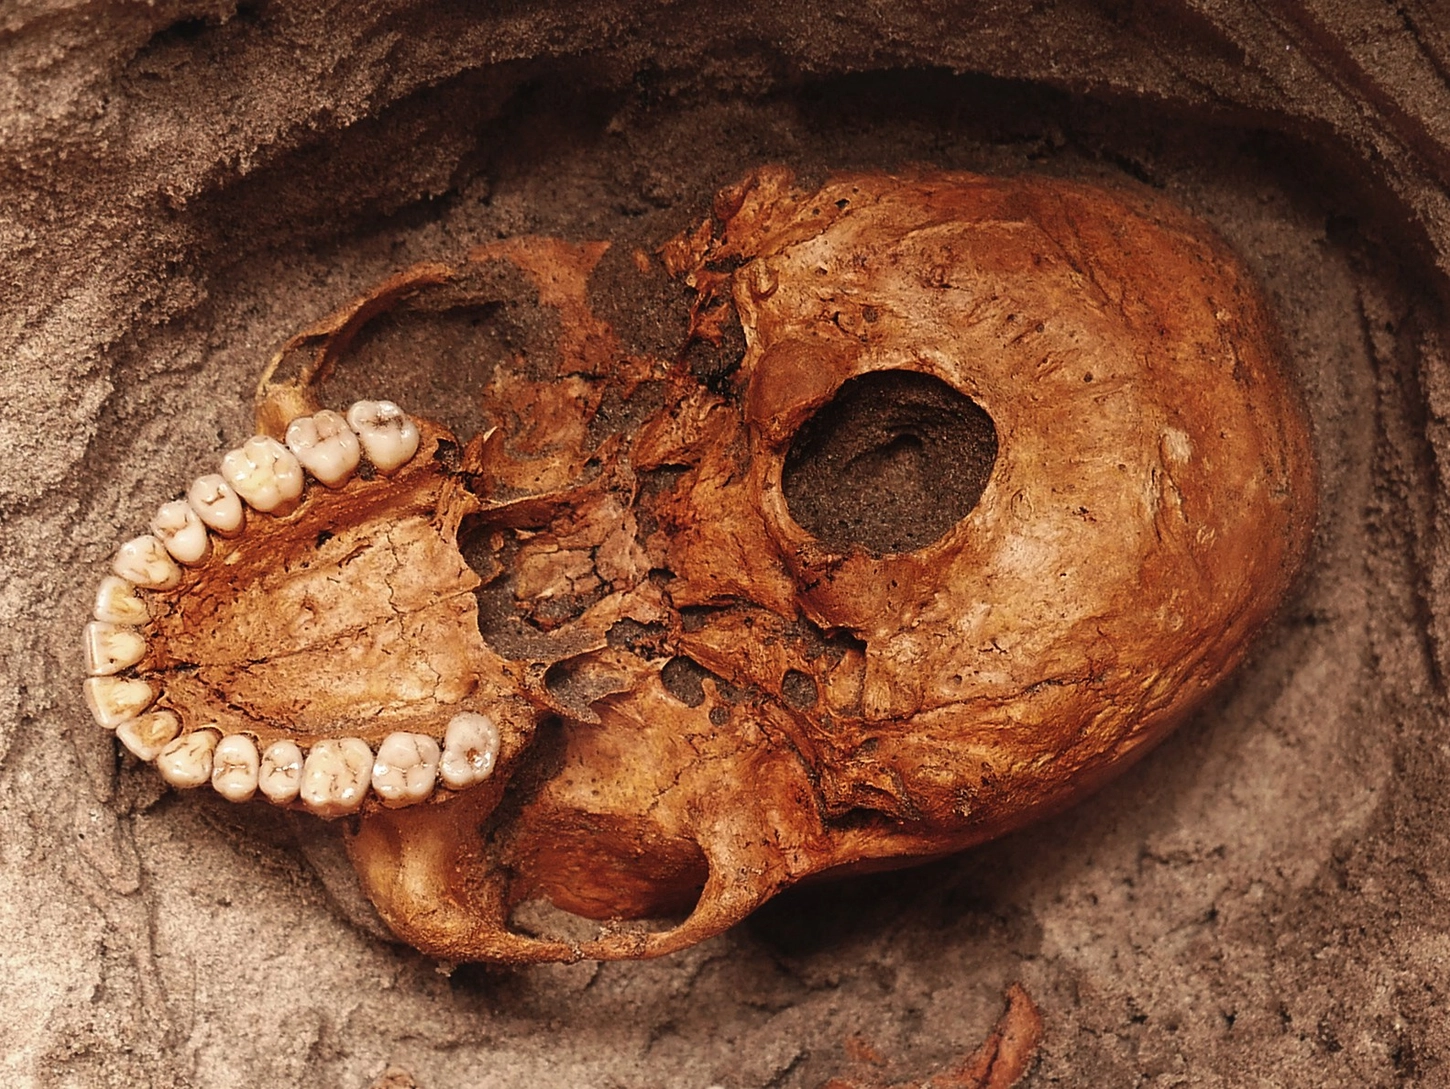 Découverte d’ossements humains vieux de 1 000 ans en Afrique de l’Est